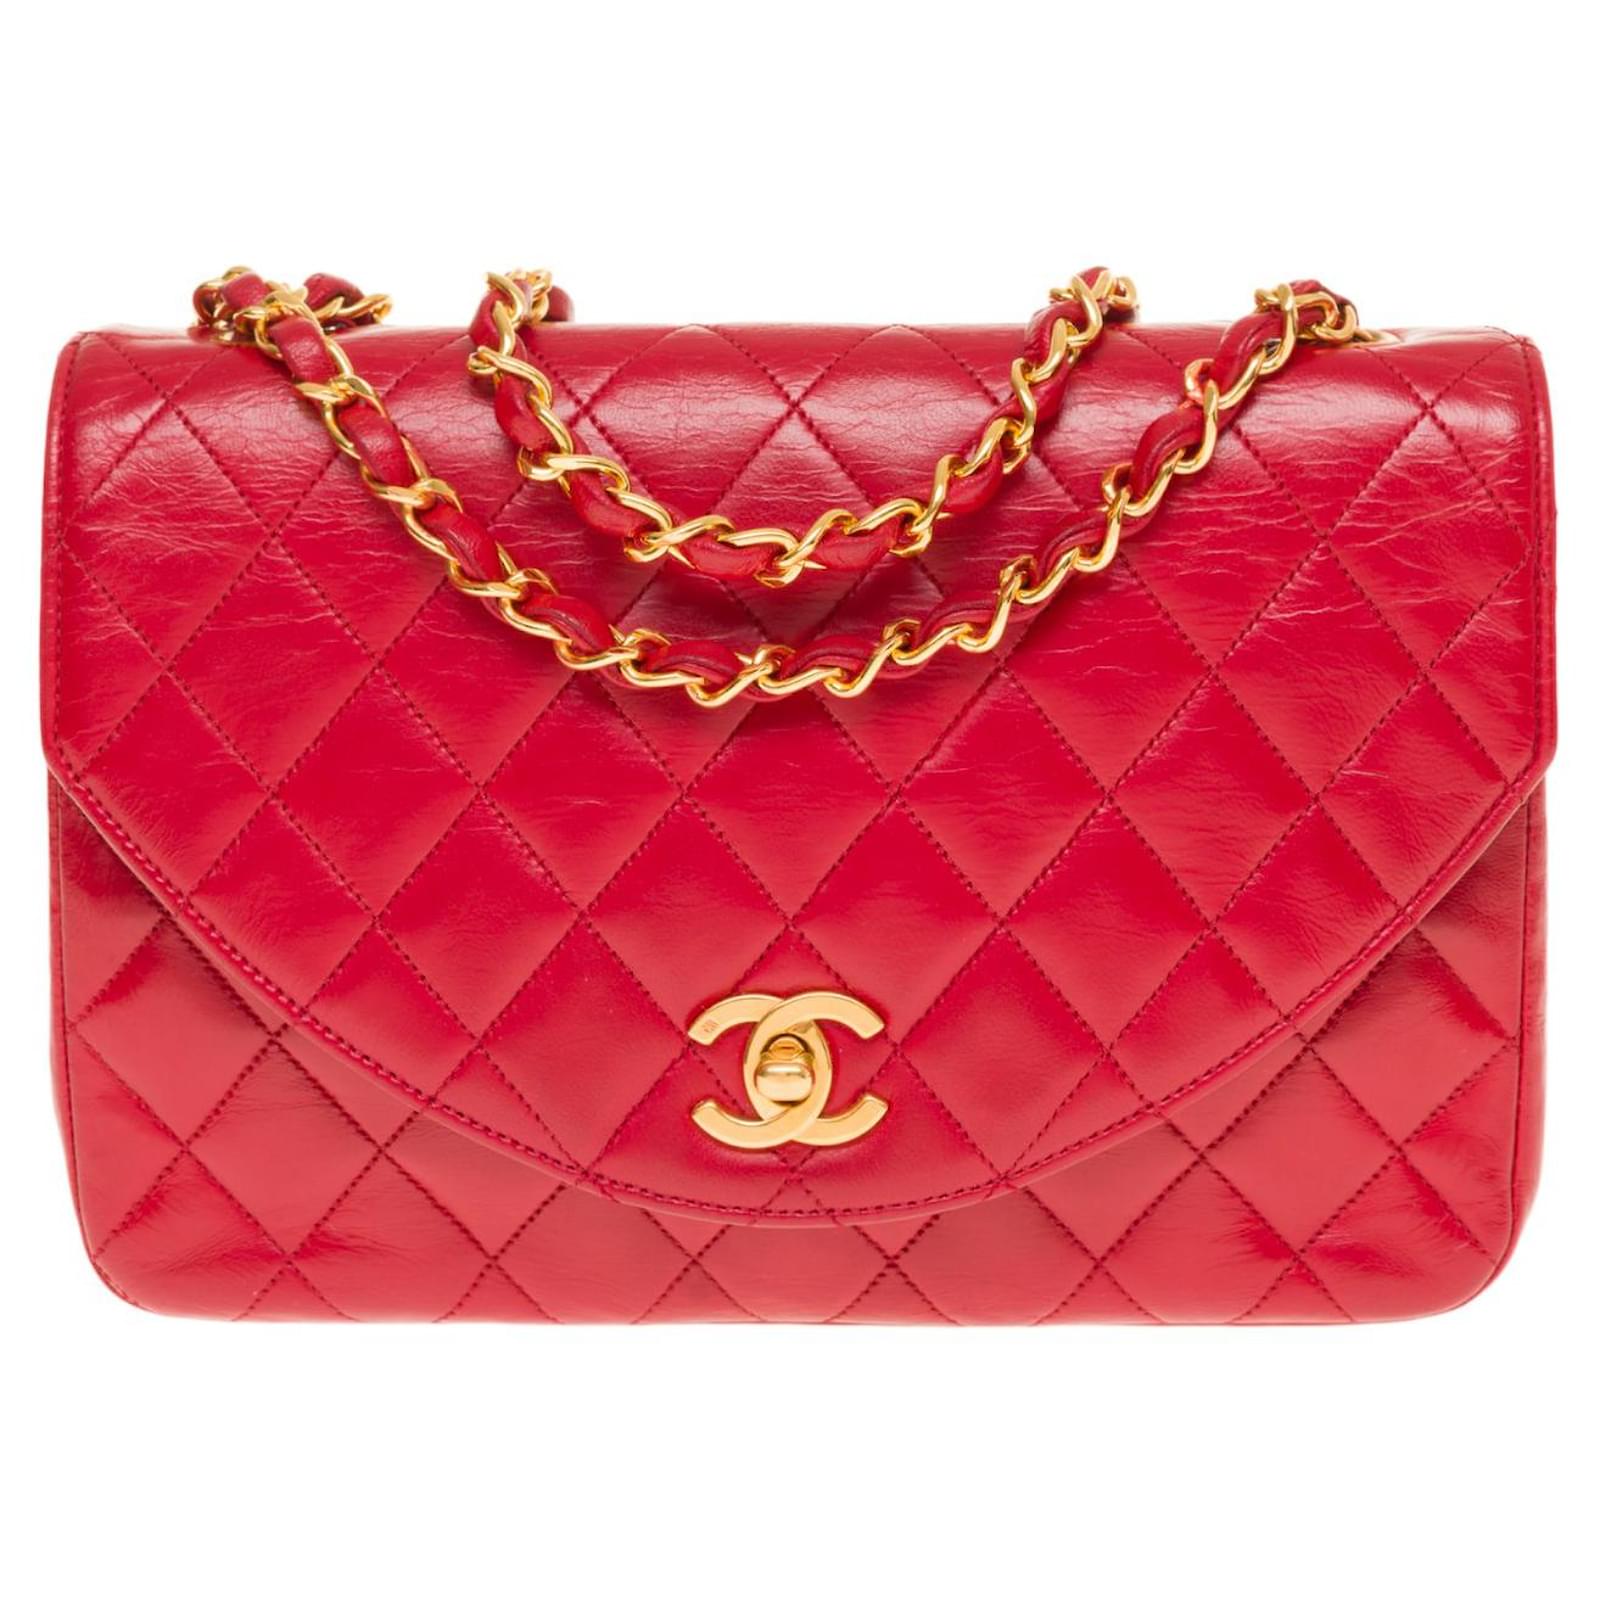 Timeless Splendid Chanel Classique flap shoulder bag in red